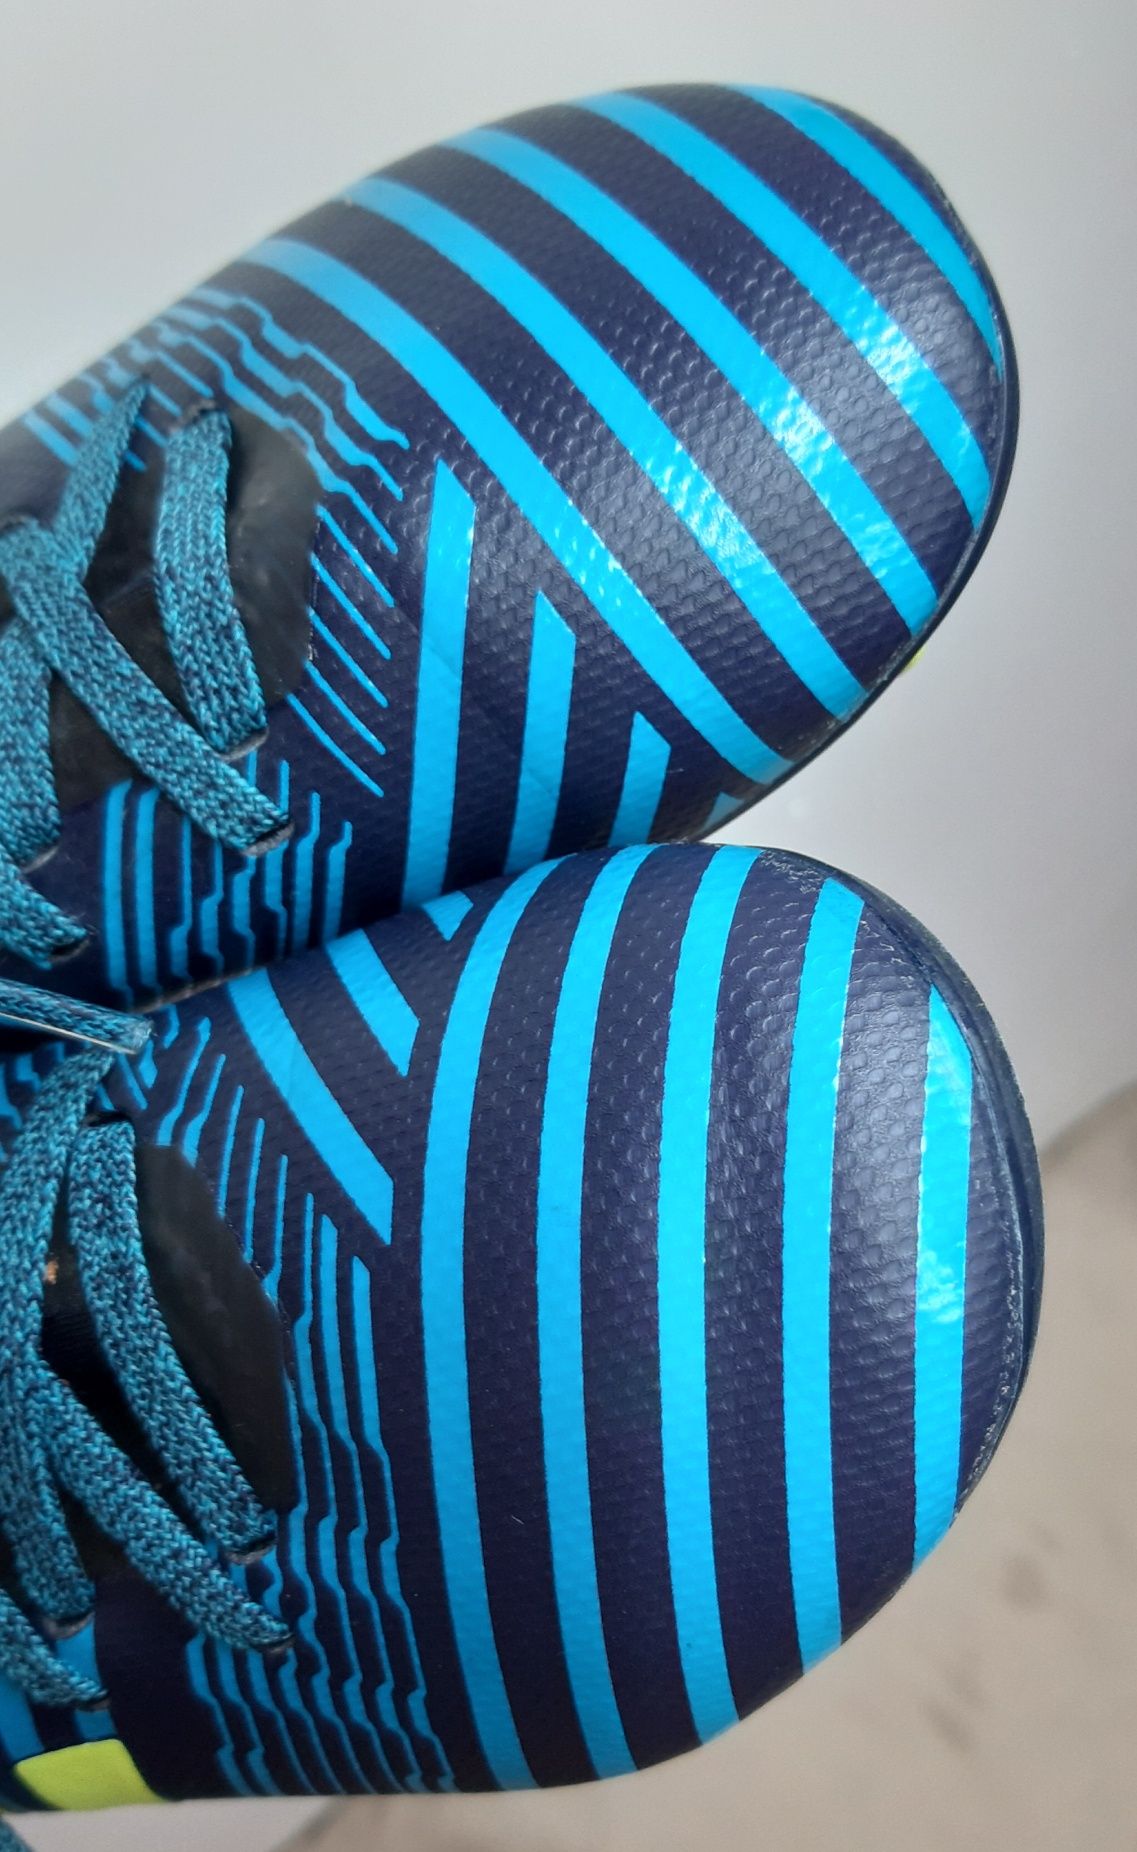 18,5см копочки бутсы кроссовки для футбола Adidas Nemesis